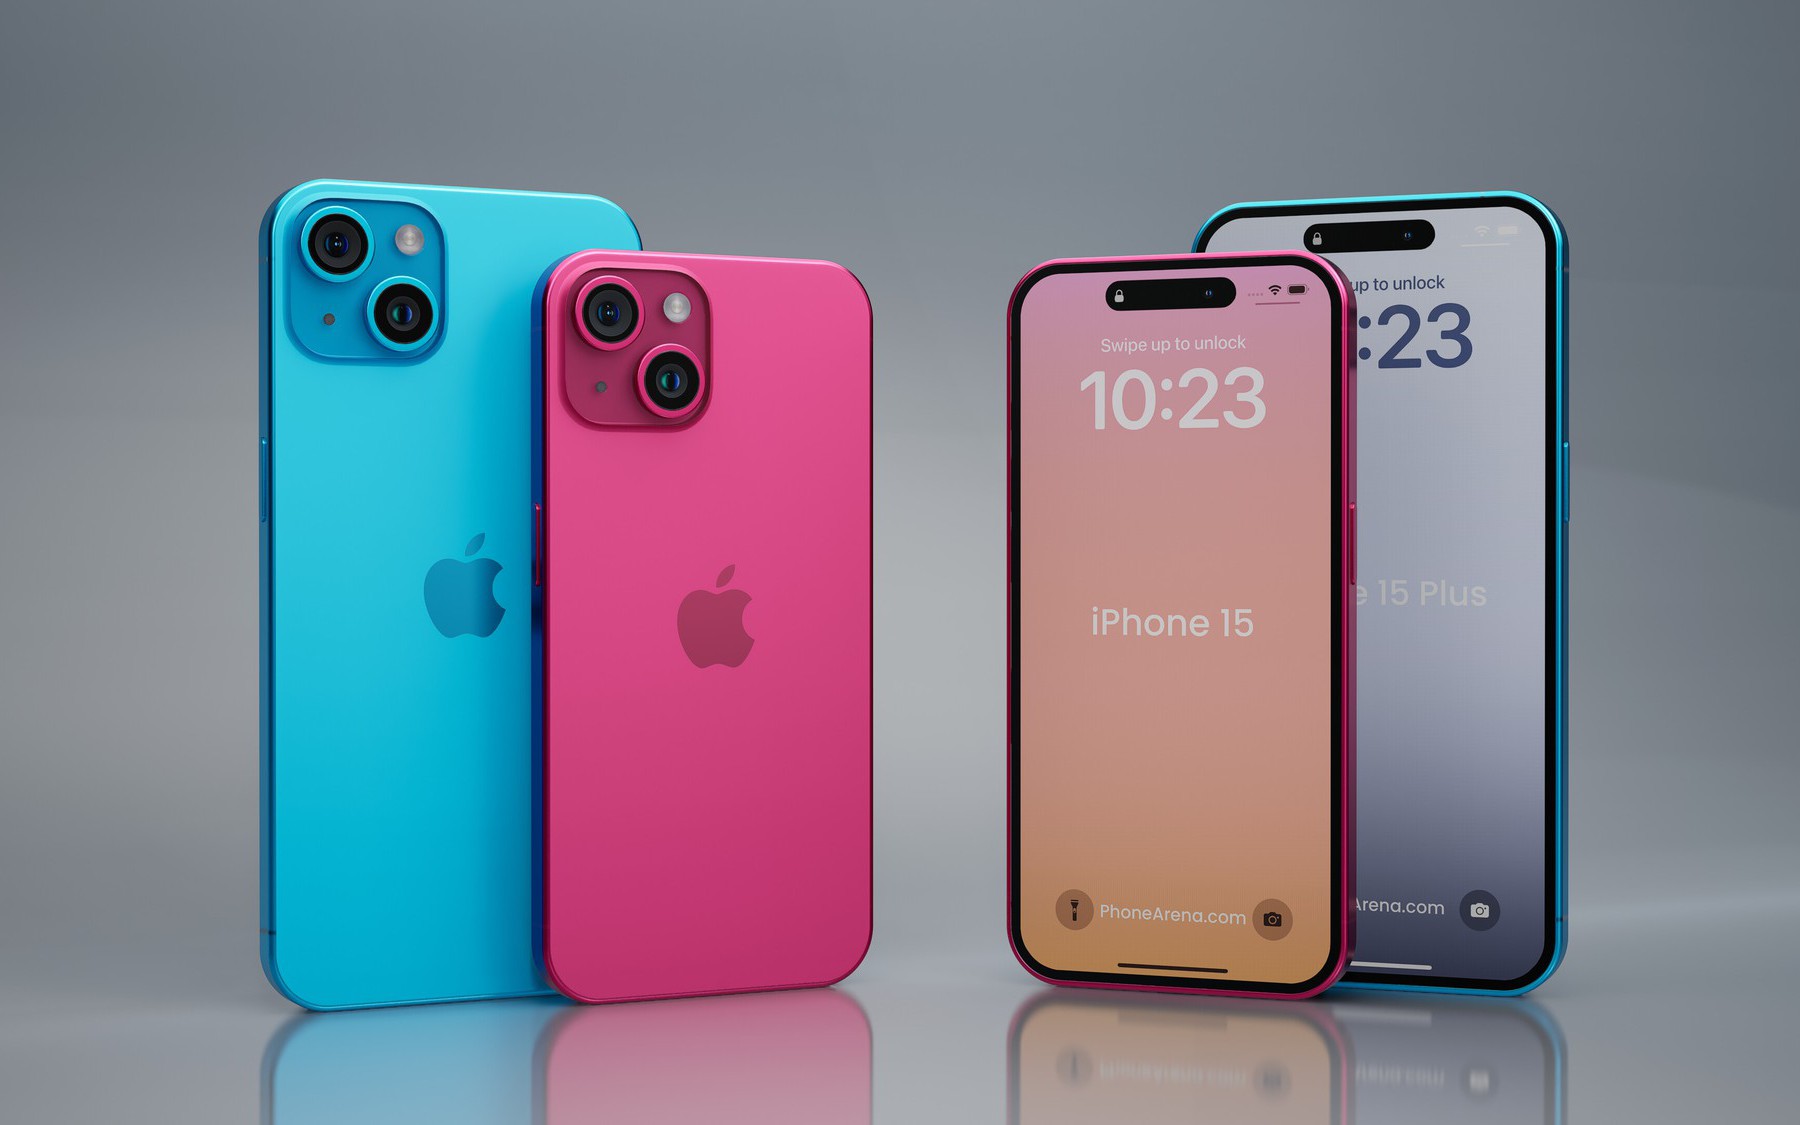 Chân dung iPhone 15 Pro Max: Ngoại hình siêu sang với loạt màu sắc mới, sẵn sàng cho thay đổi ấn tượng sau 1 thập kỷ!